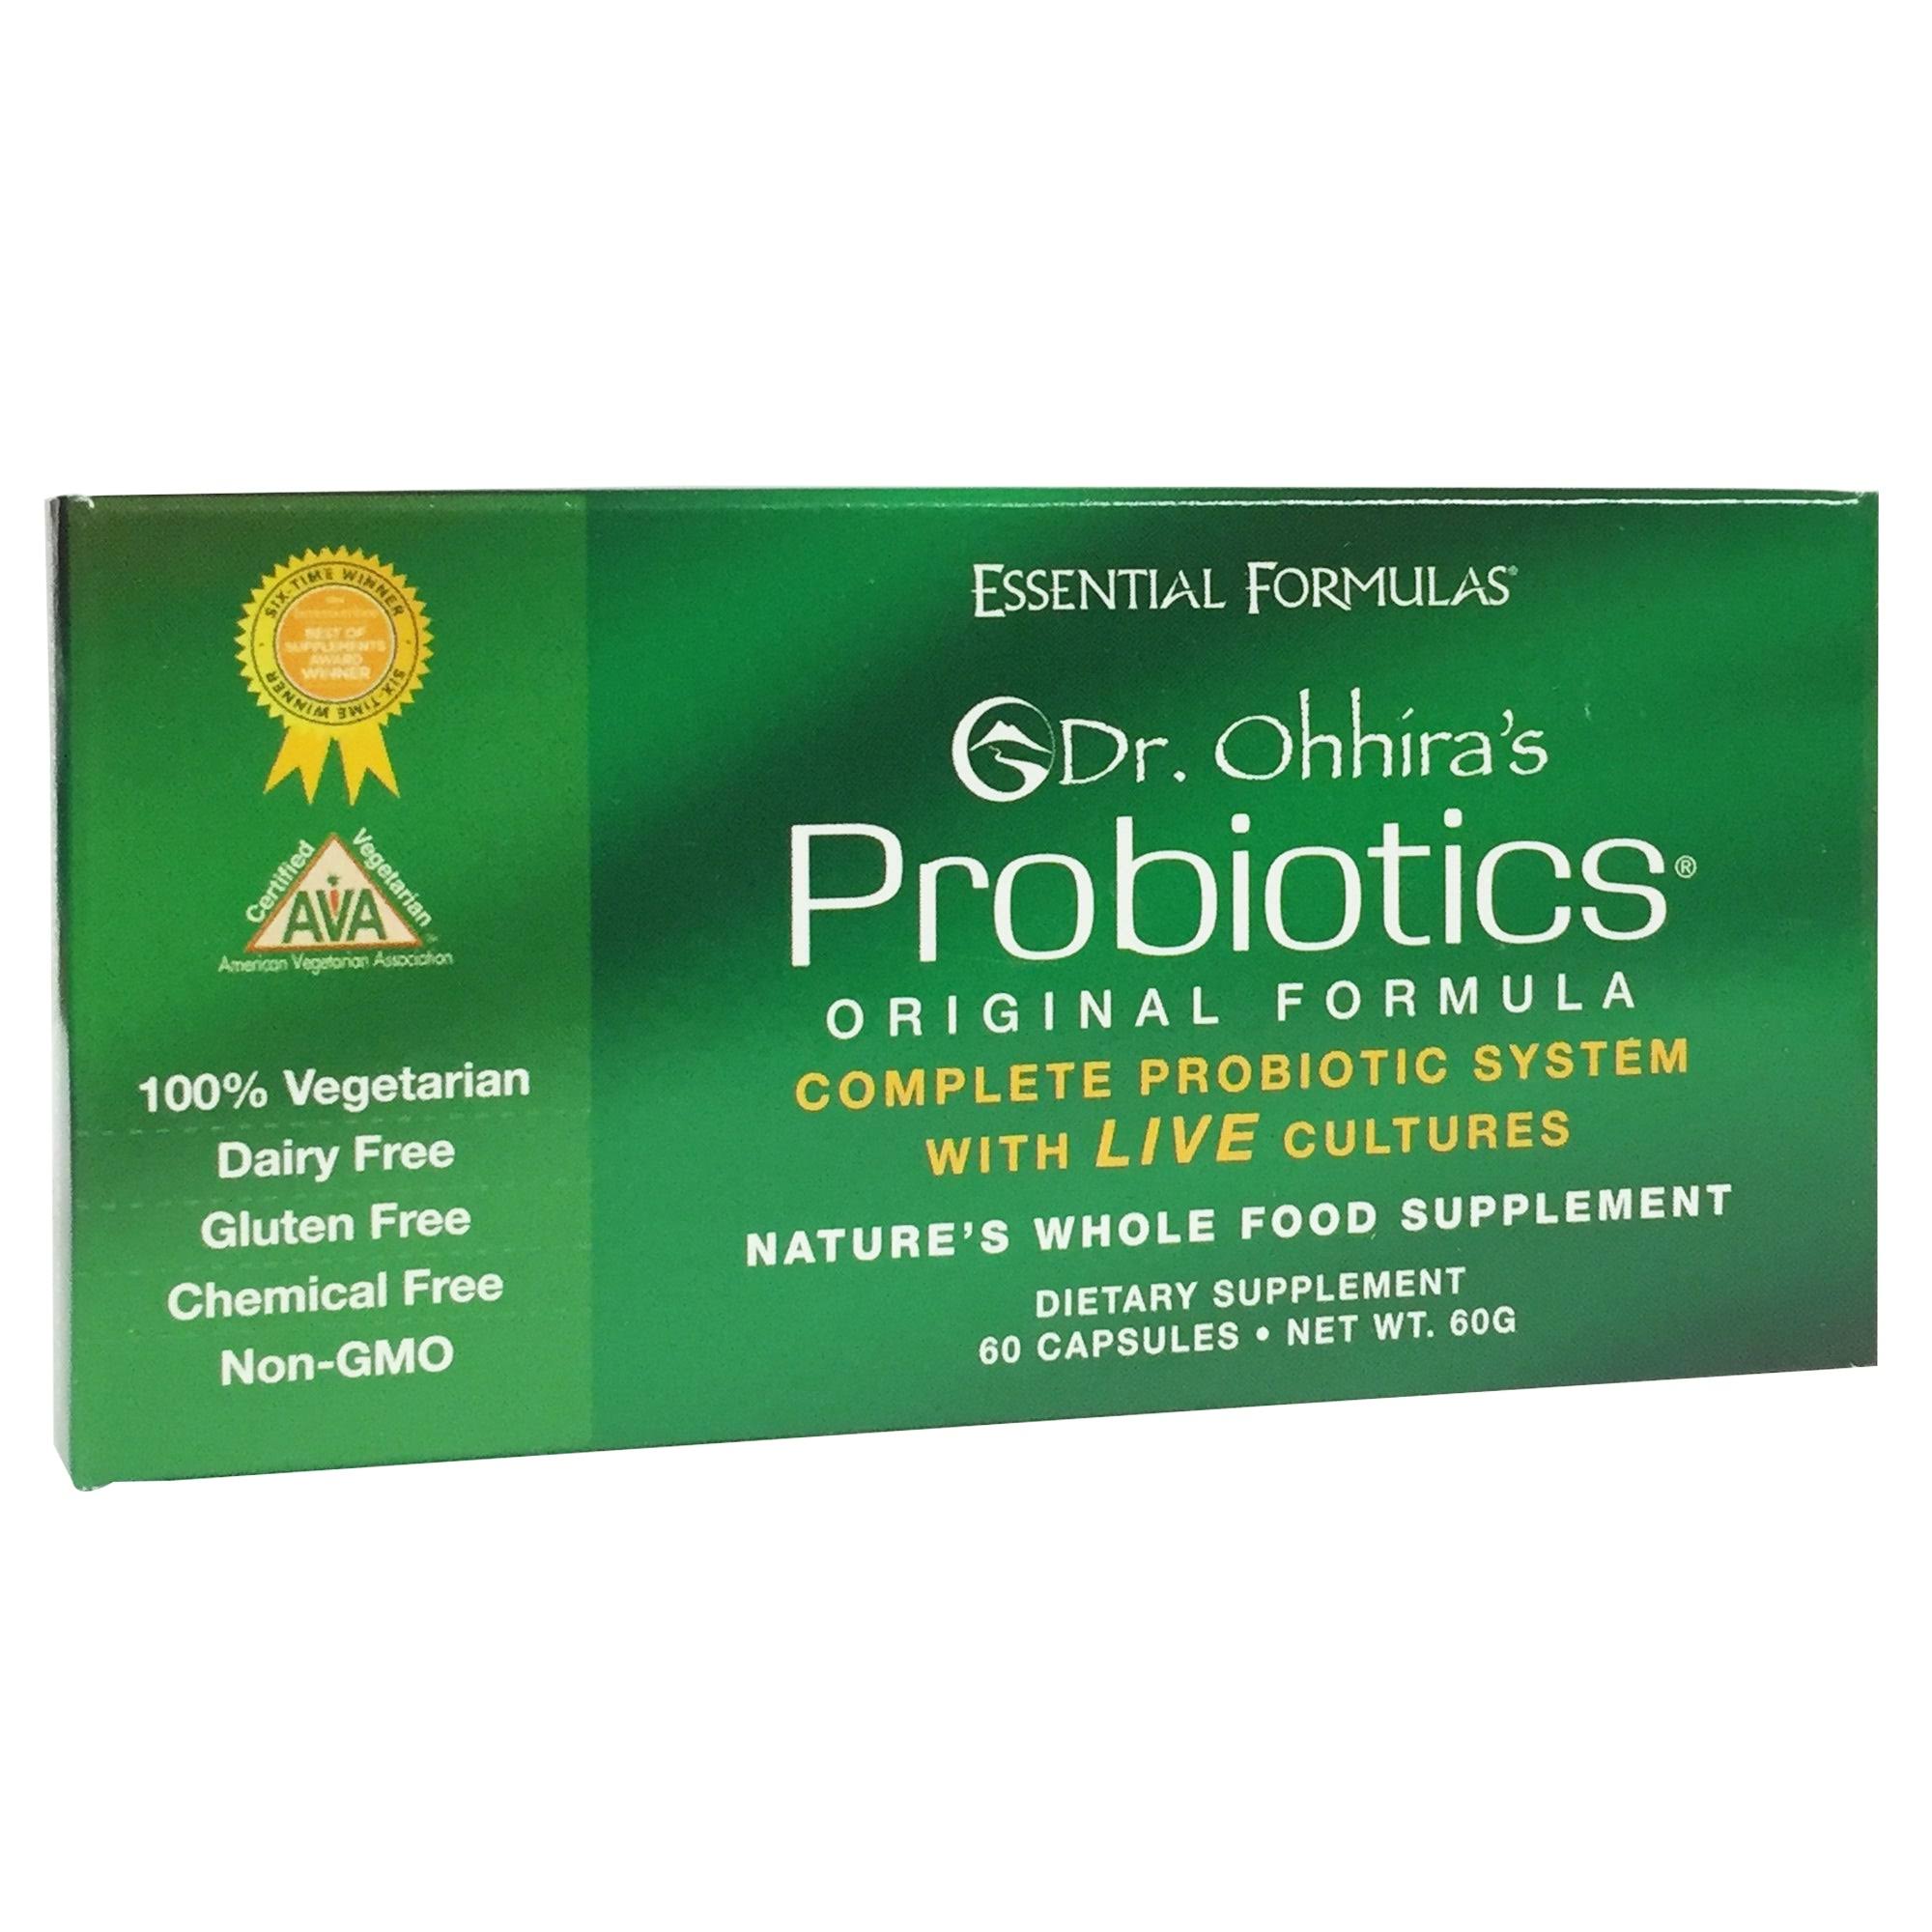 Dr. Ohhira's Probiotics Original Formula - 60 Capsules